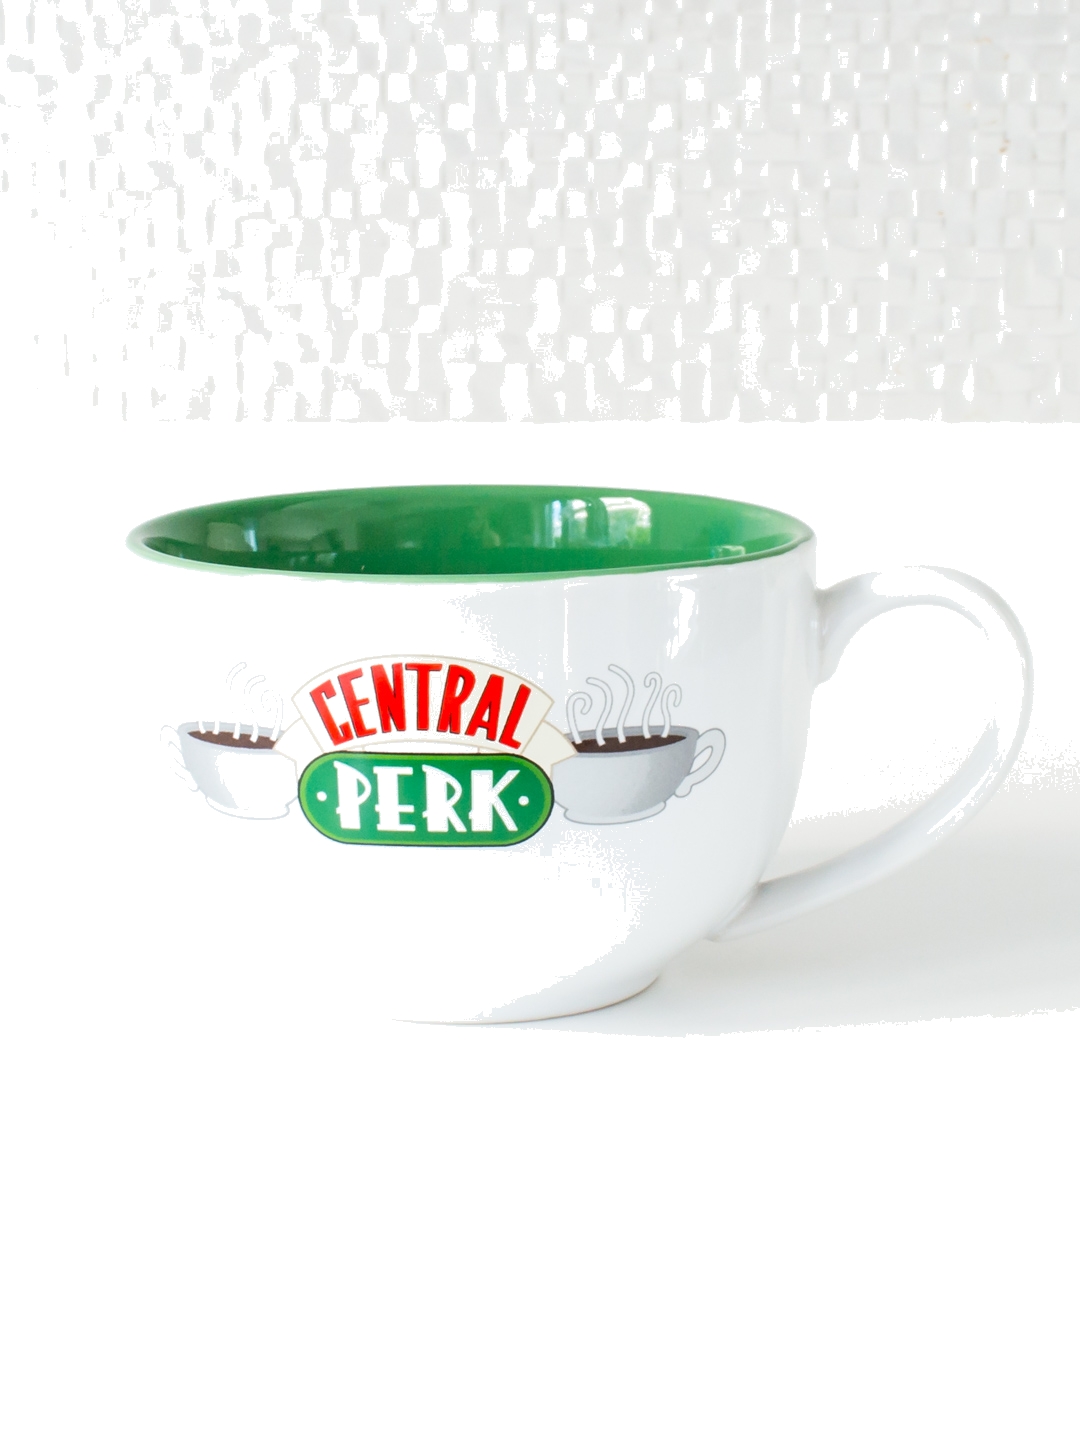 Κούπα Friends Central Perk Ceramic